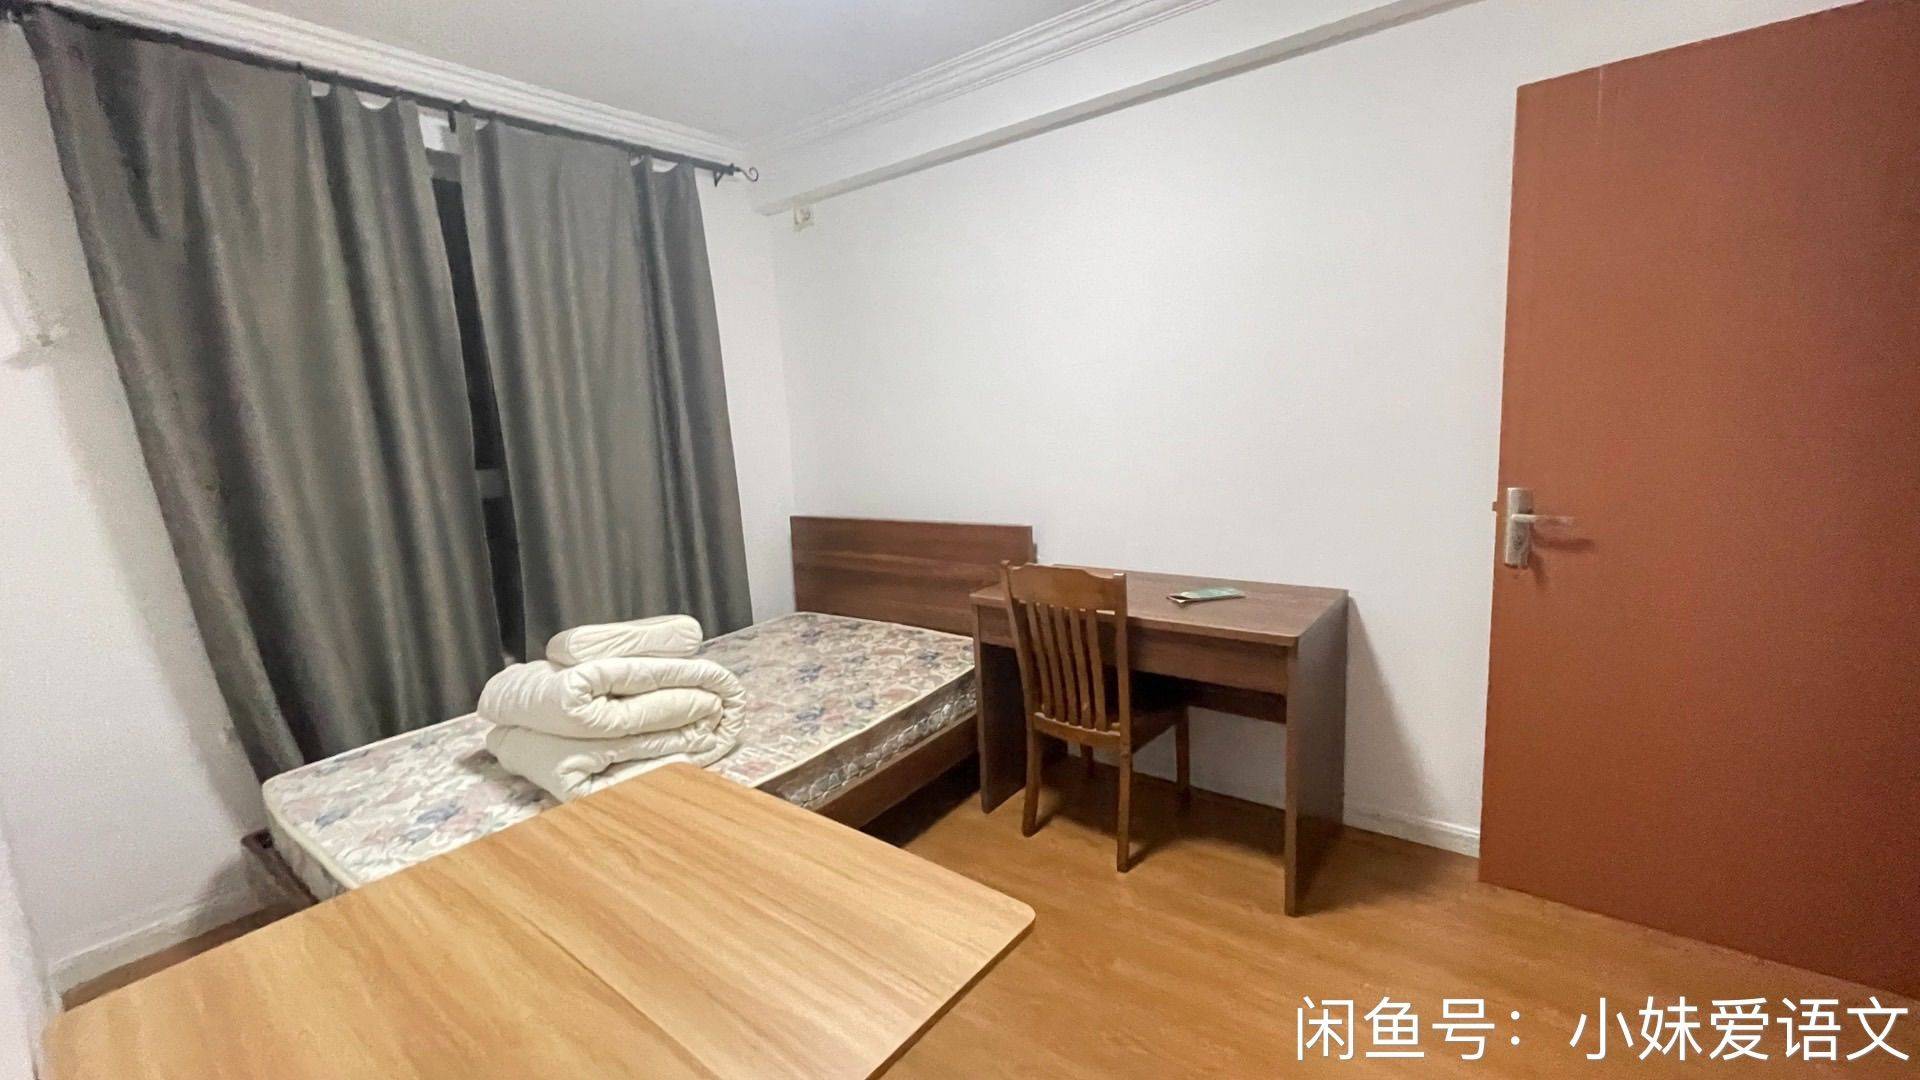 Shanghai-Putuo-Cozy Home,Clean&Comfy,No Gender Limit,“Friends”,Pet Friendly